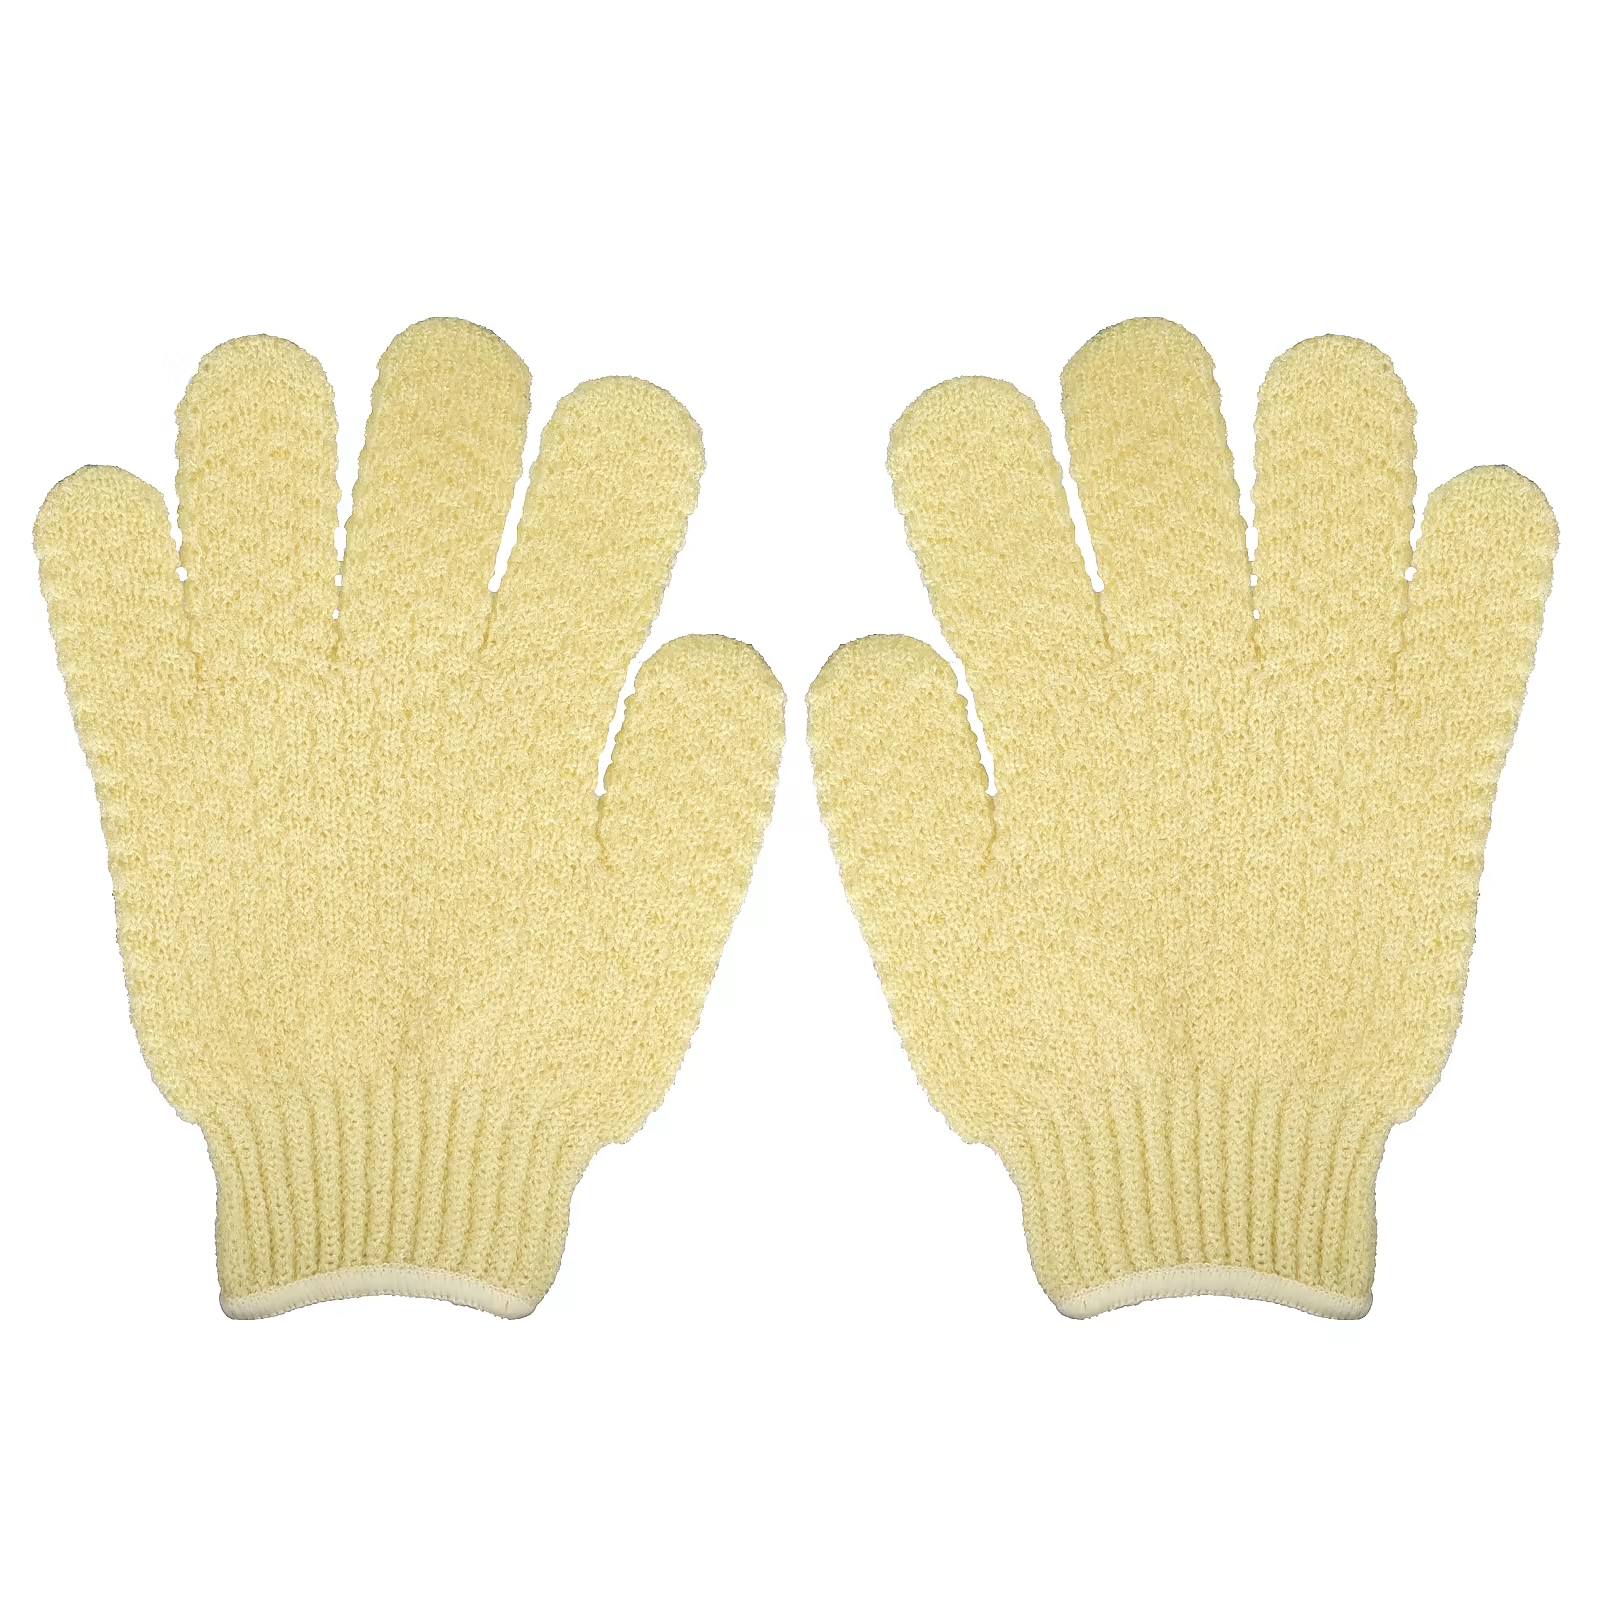 Губка-перчатка Earth Therapeutics Exfoliating Hydro Gloves, 1 пара